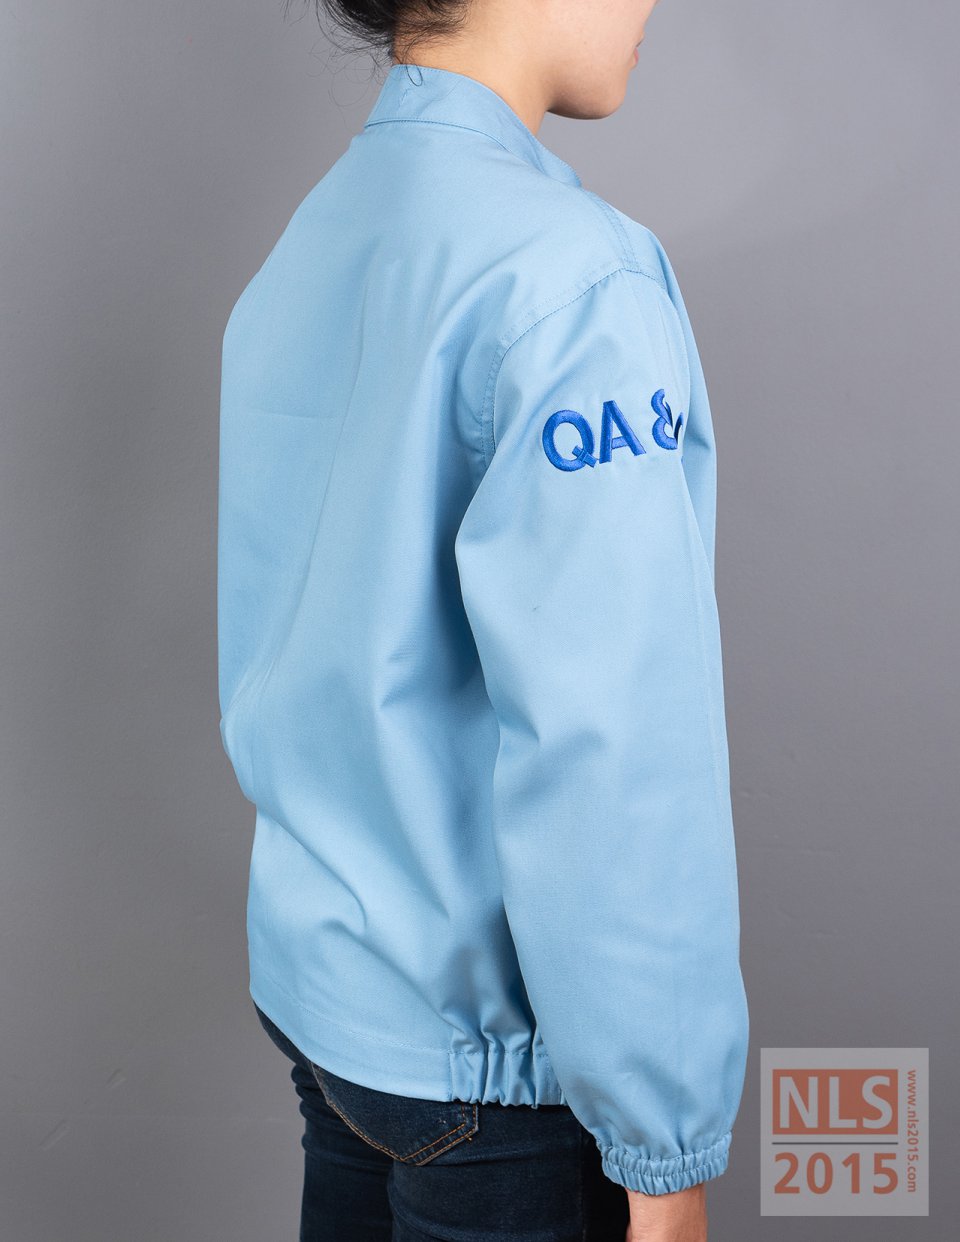 เสื้อแจ็คเก็ตพนักงาน QA&QC เนื้อผ้าคอมทวิว ยางยืดที่ปลายแขนและเอว บริษัท เอ.เจ.พลาสท์ จำกัด (มหาชน)รูปที่ 